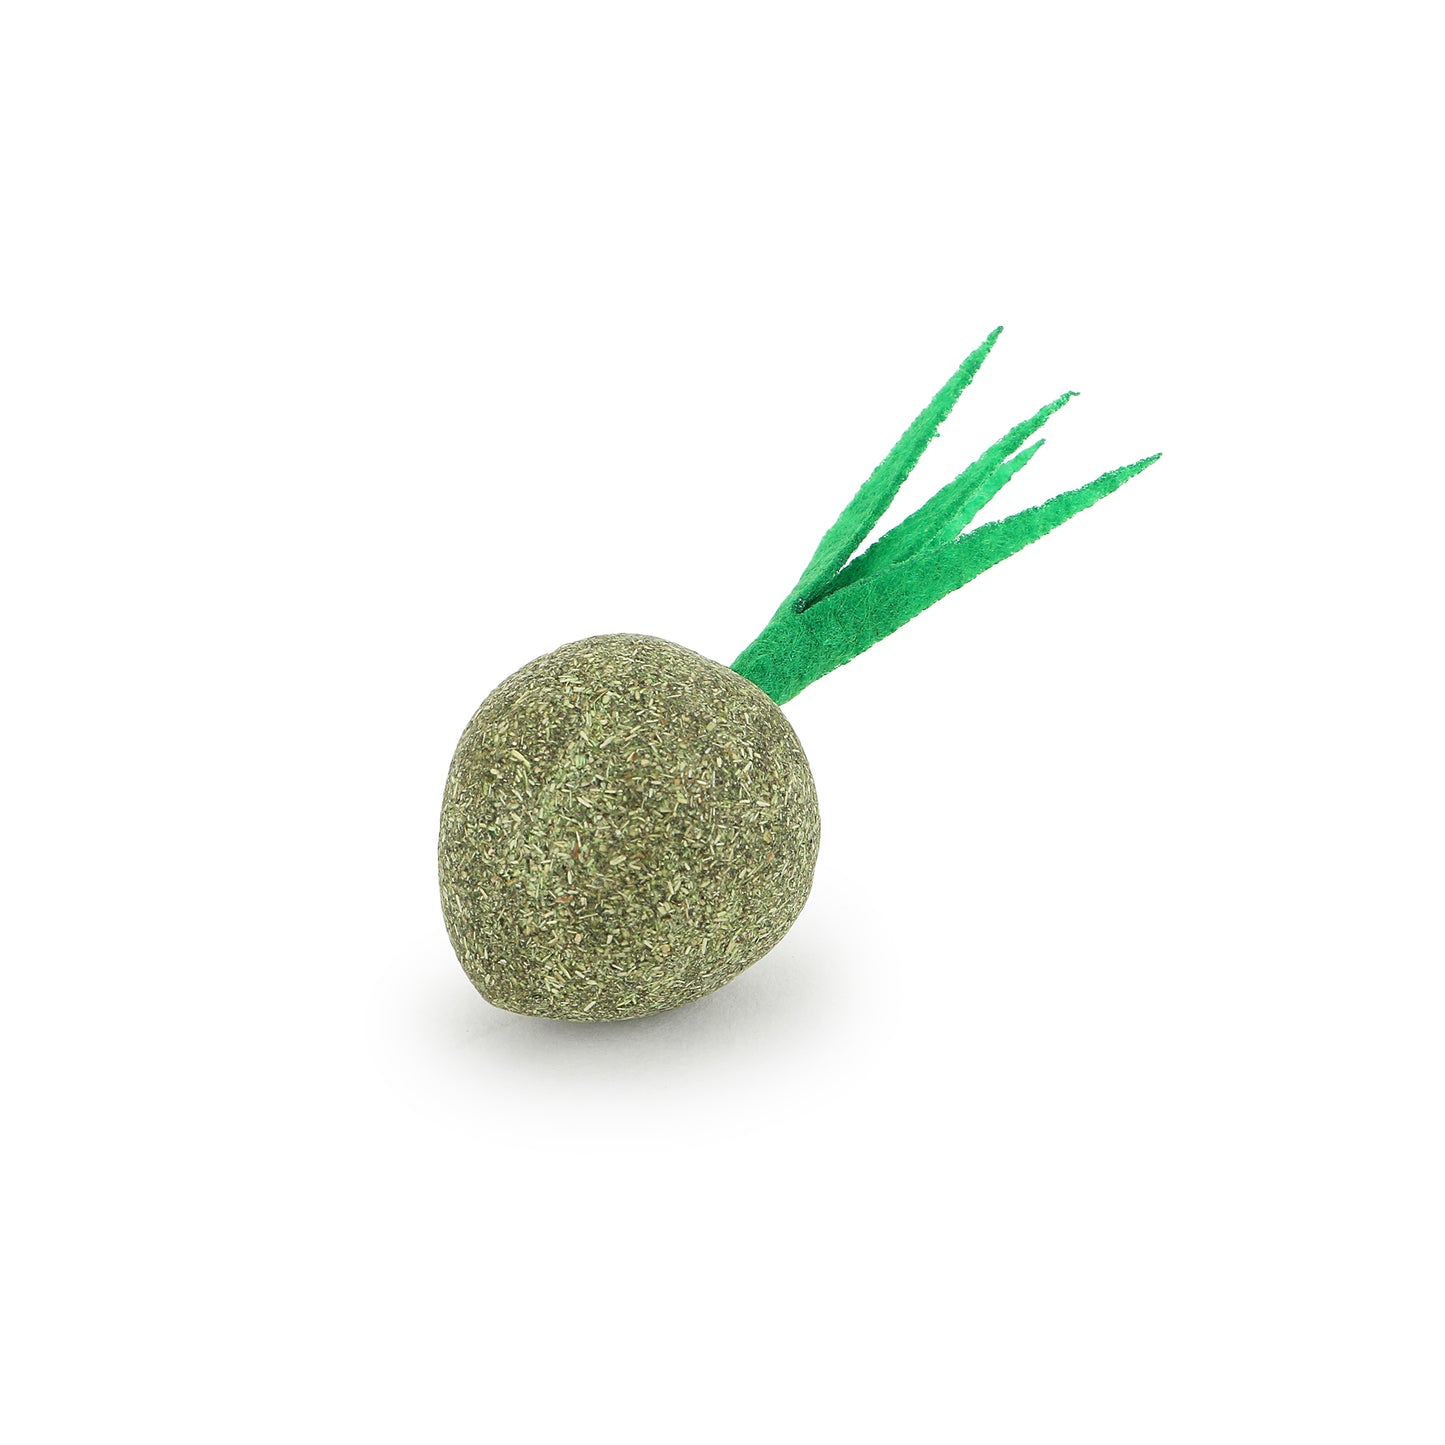 Basil Catnip Toy With Leaf